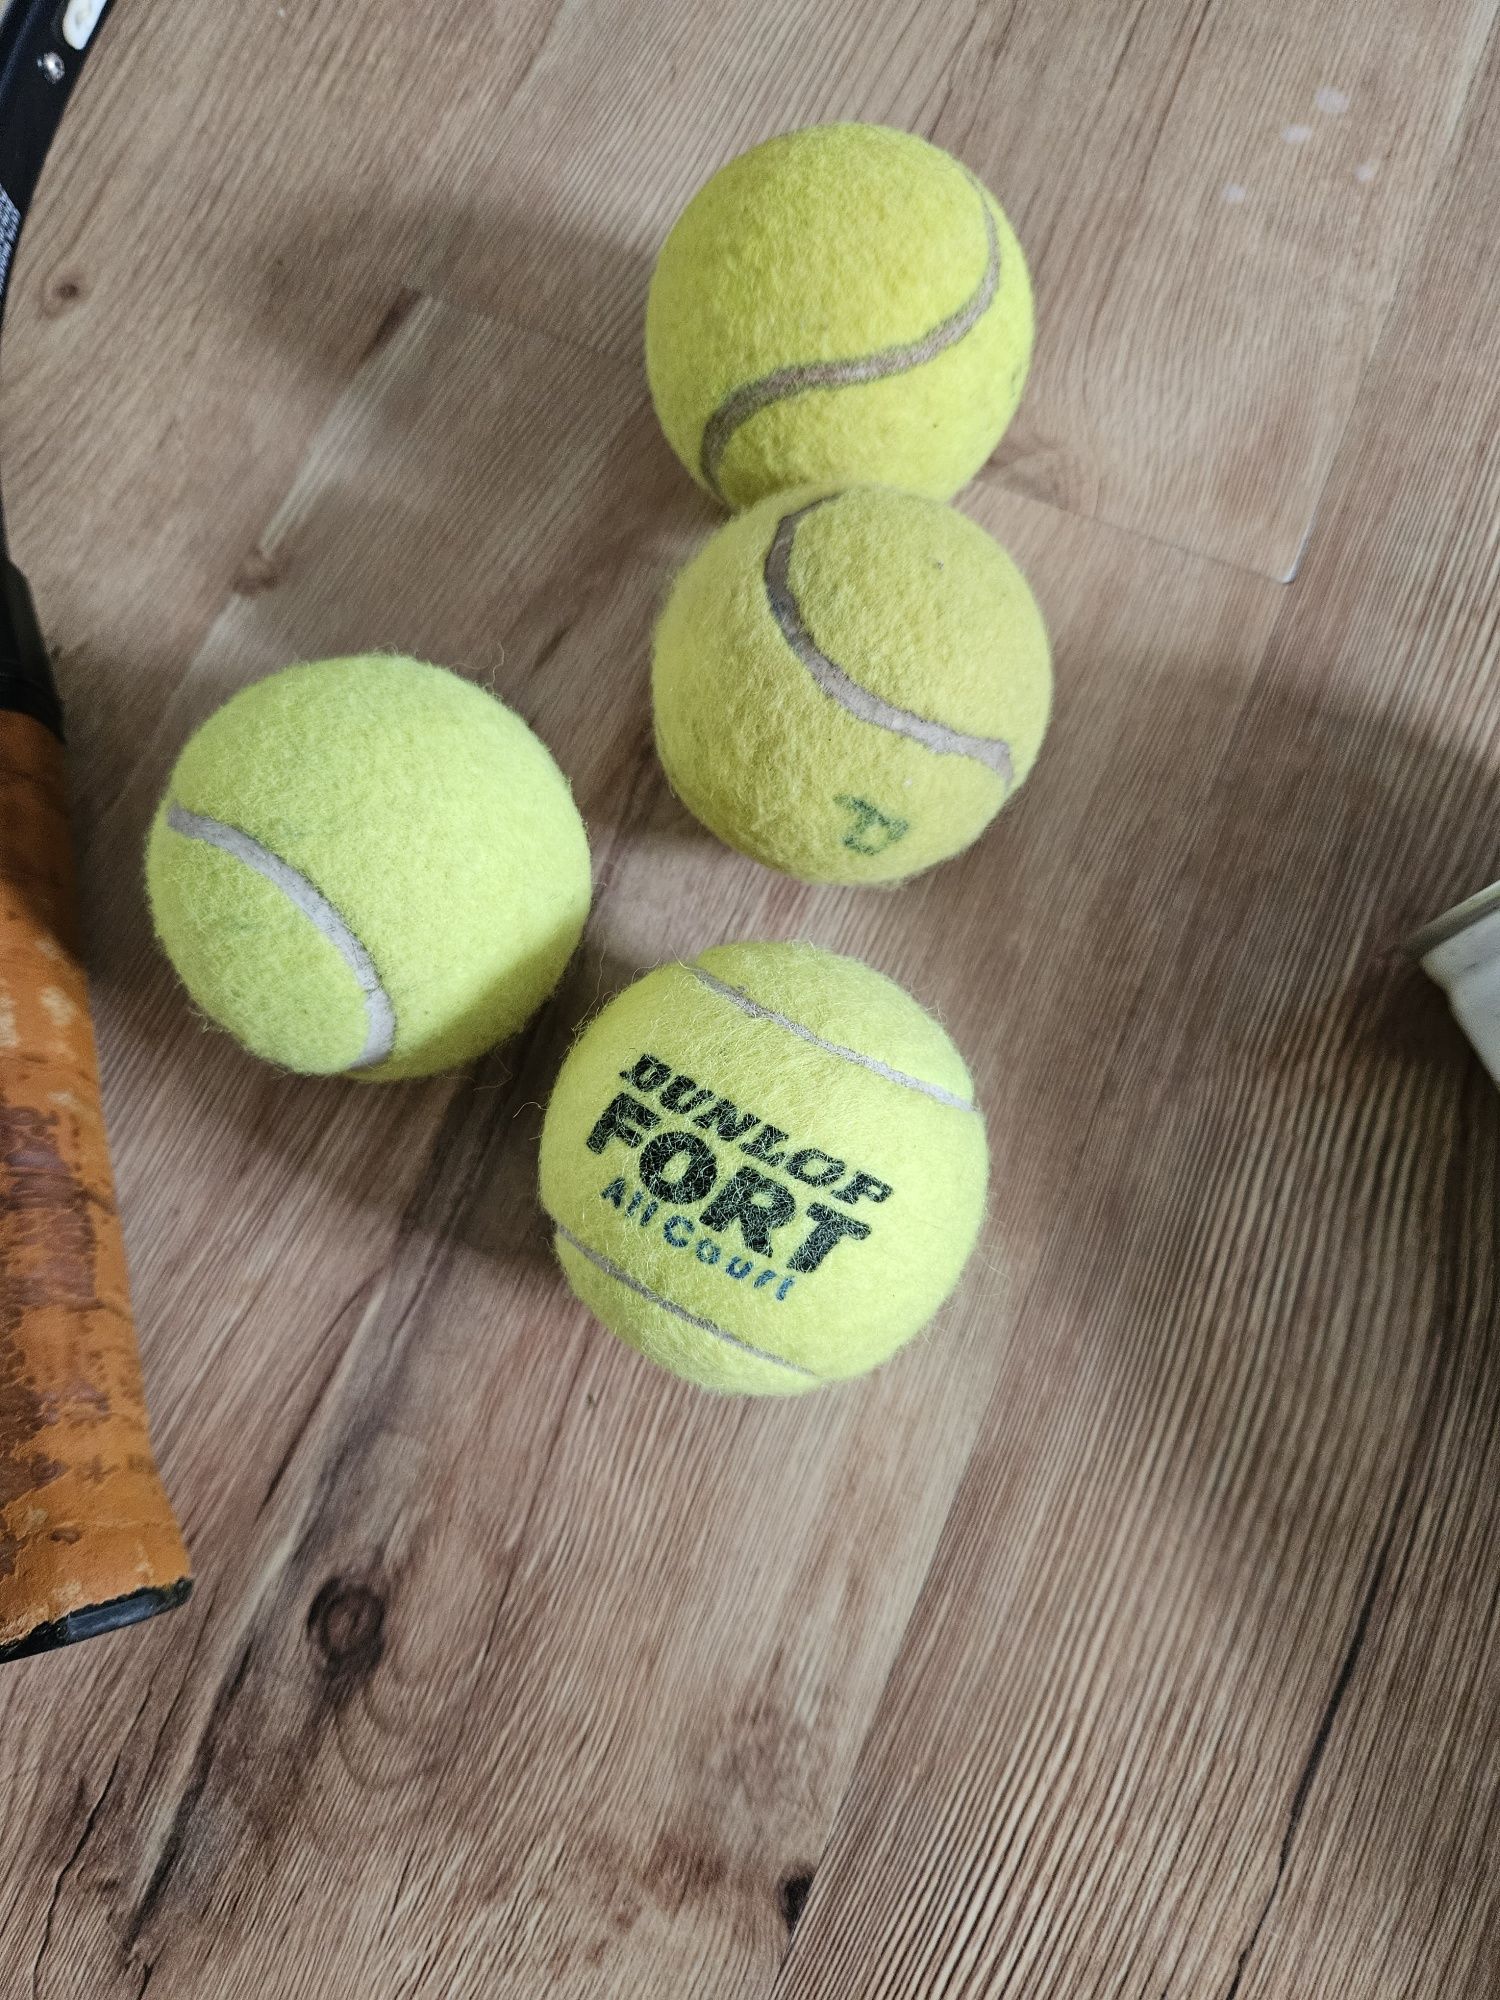 Rakiety  do tenisa  Dunlop